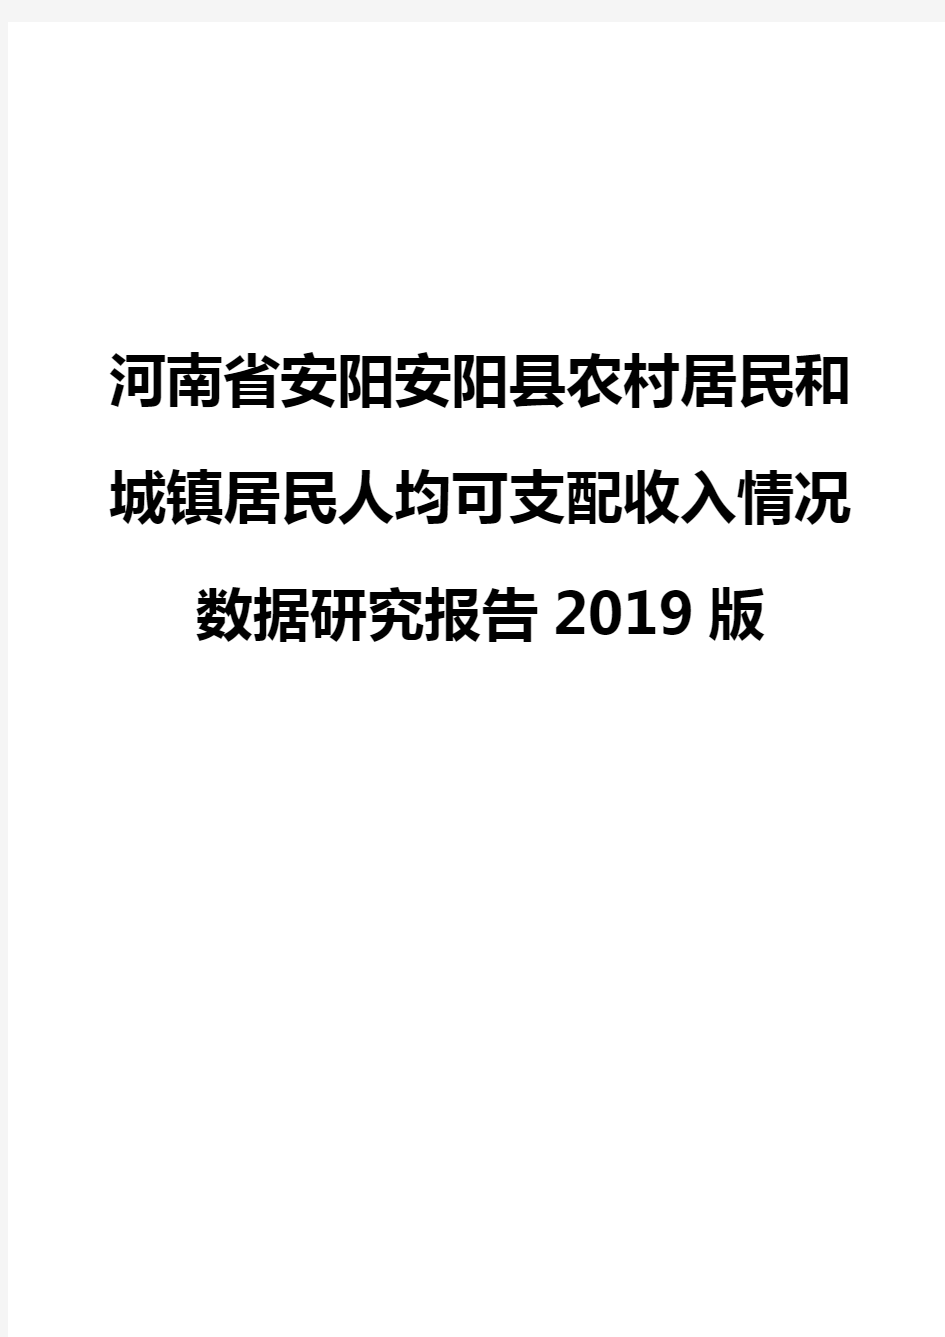 河南省安阳安阳县农村居民和城镇居民人均可支配收入情况数据研究报告2019版